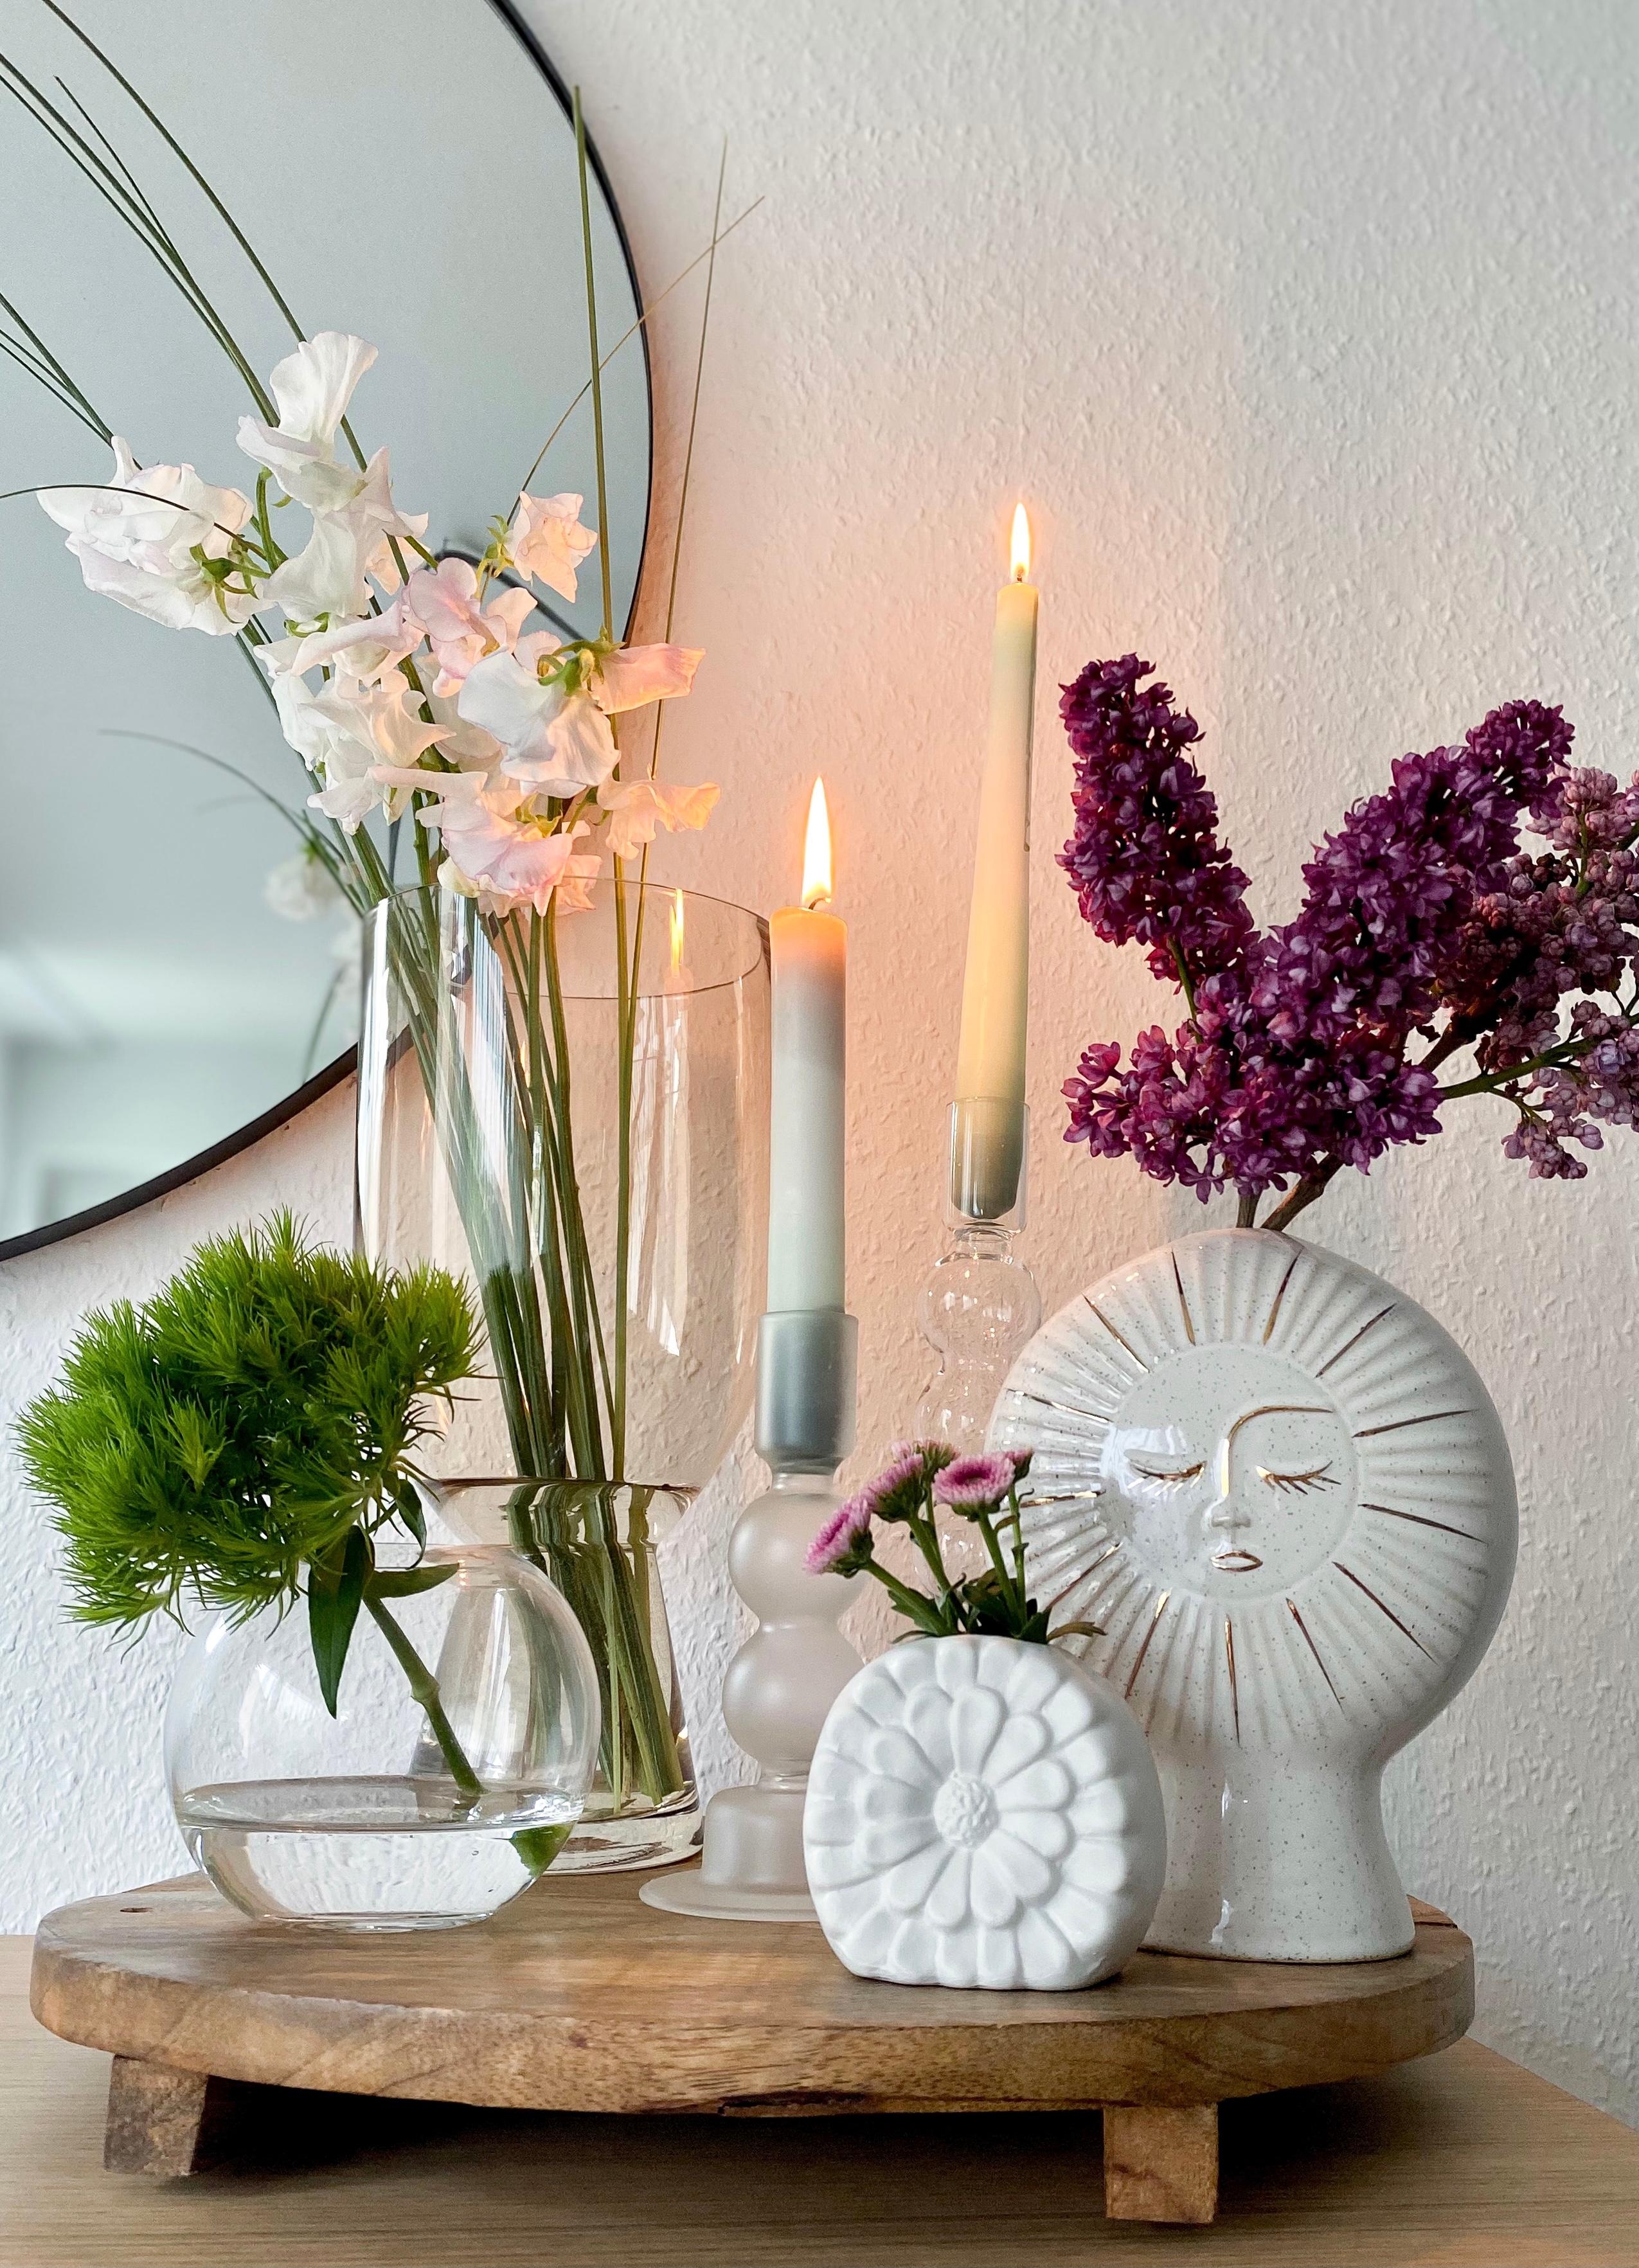 Die Liebe steckt im Detail: Vasenglück, frische Blümchen, Dip-DIY-Kerzen. #detailverliebt #blumenliebe #vasenglück #mai 